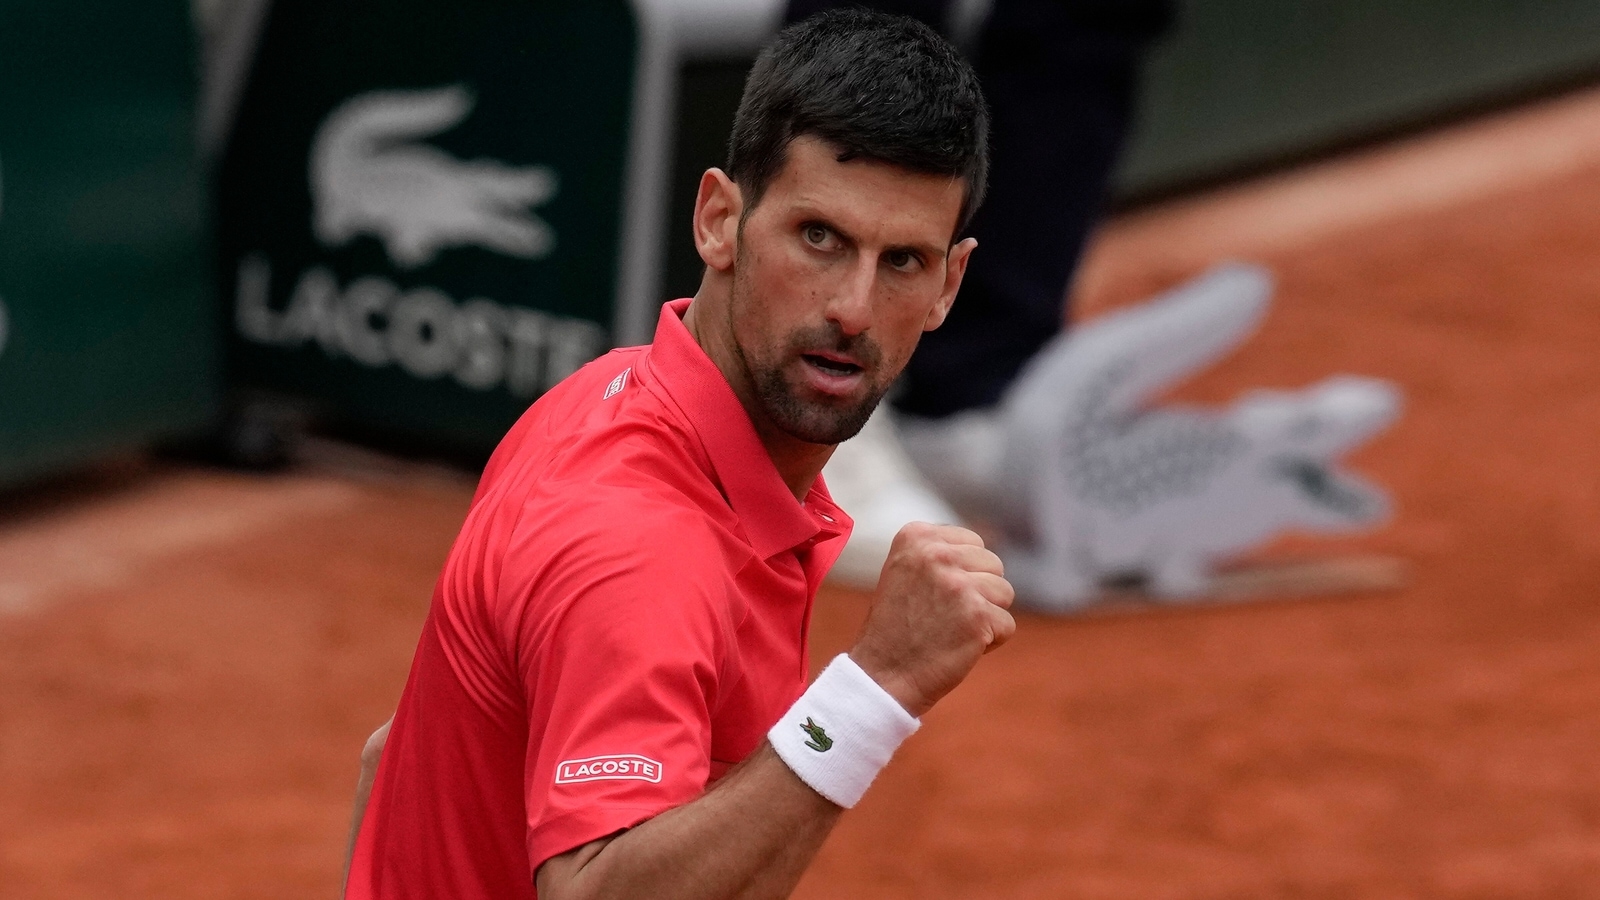 French Open: Novak Djokovic downs Schwartzman to enter quarterfinals